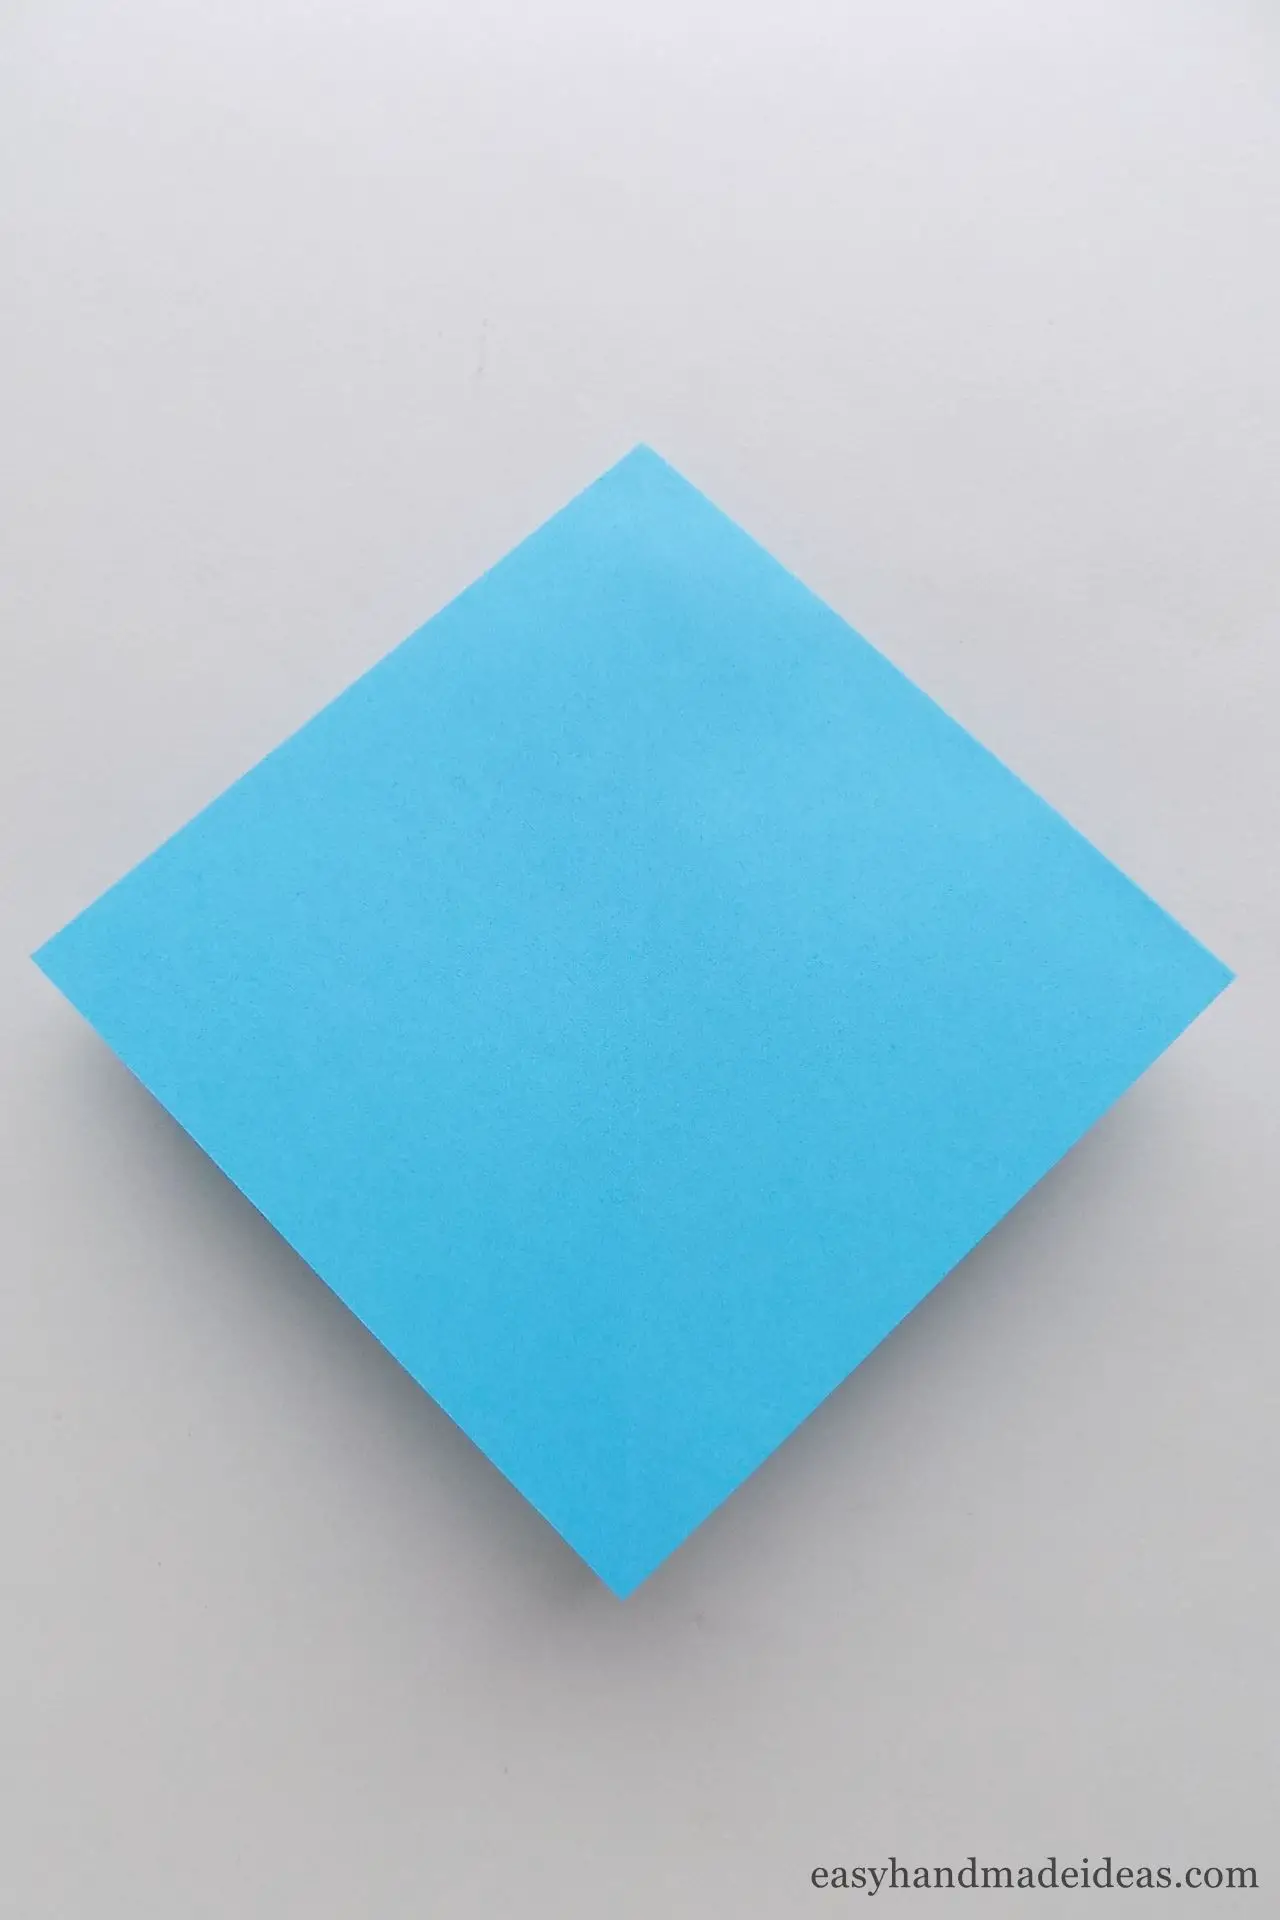 Fold the square in half twice